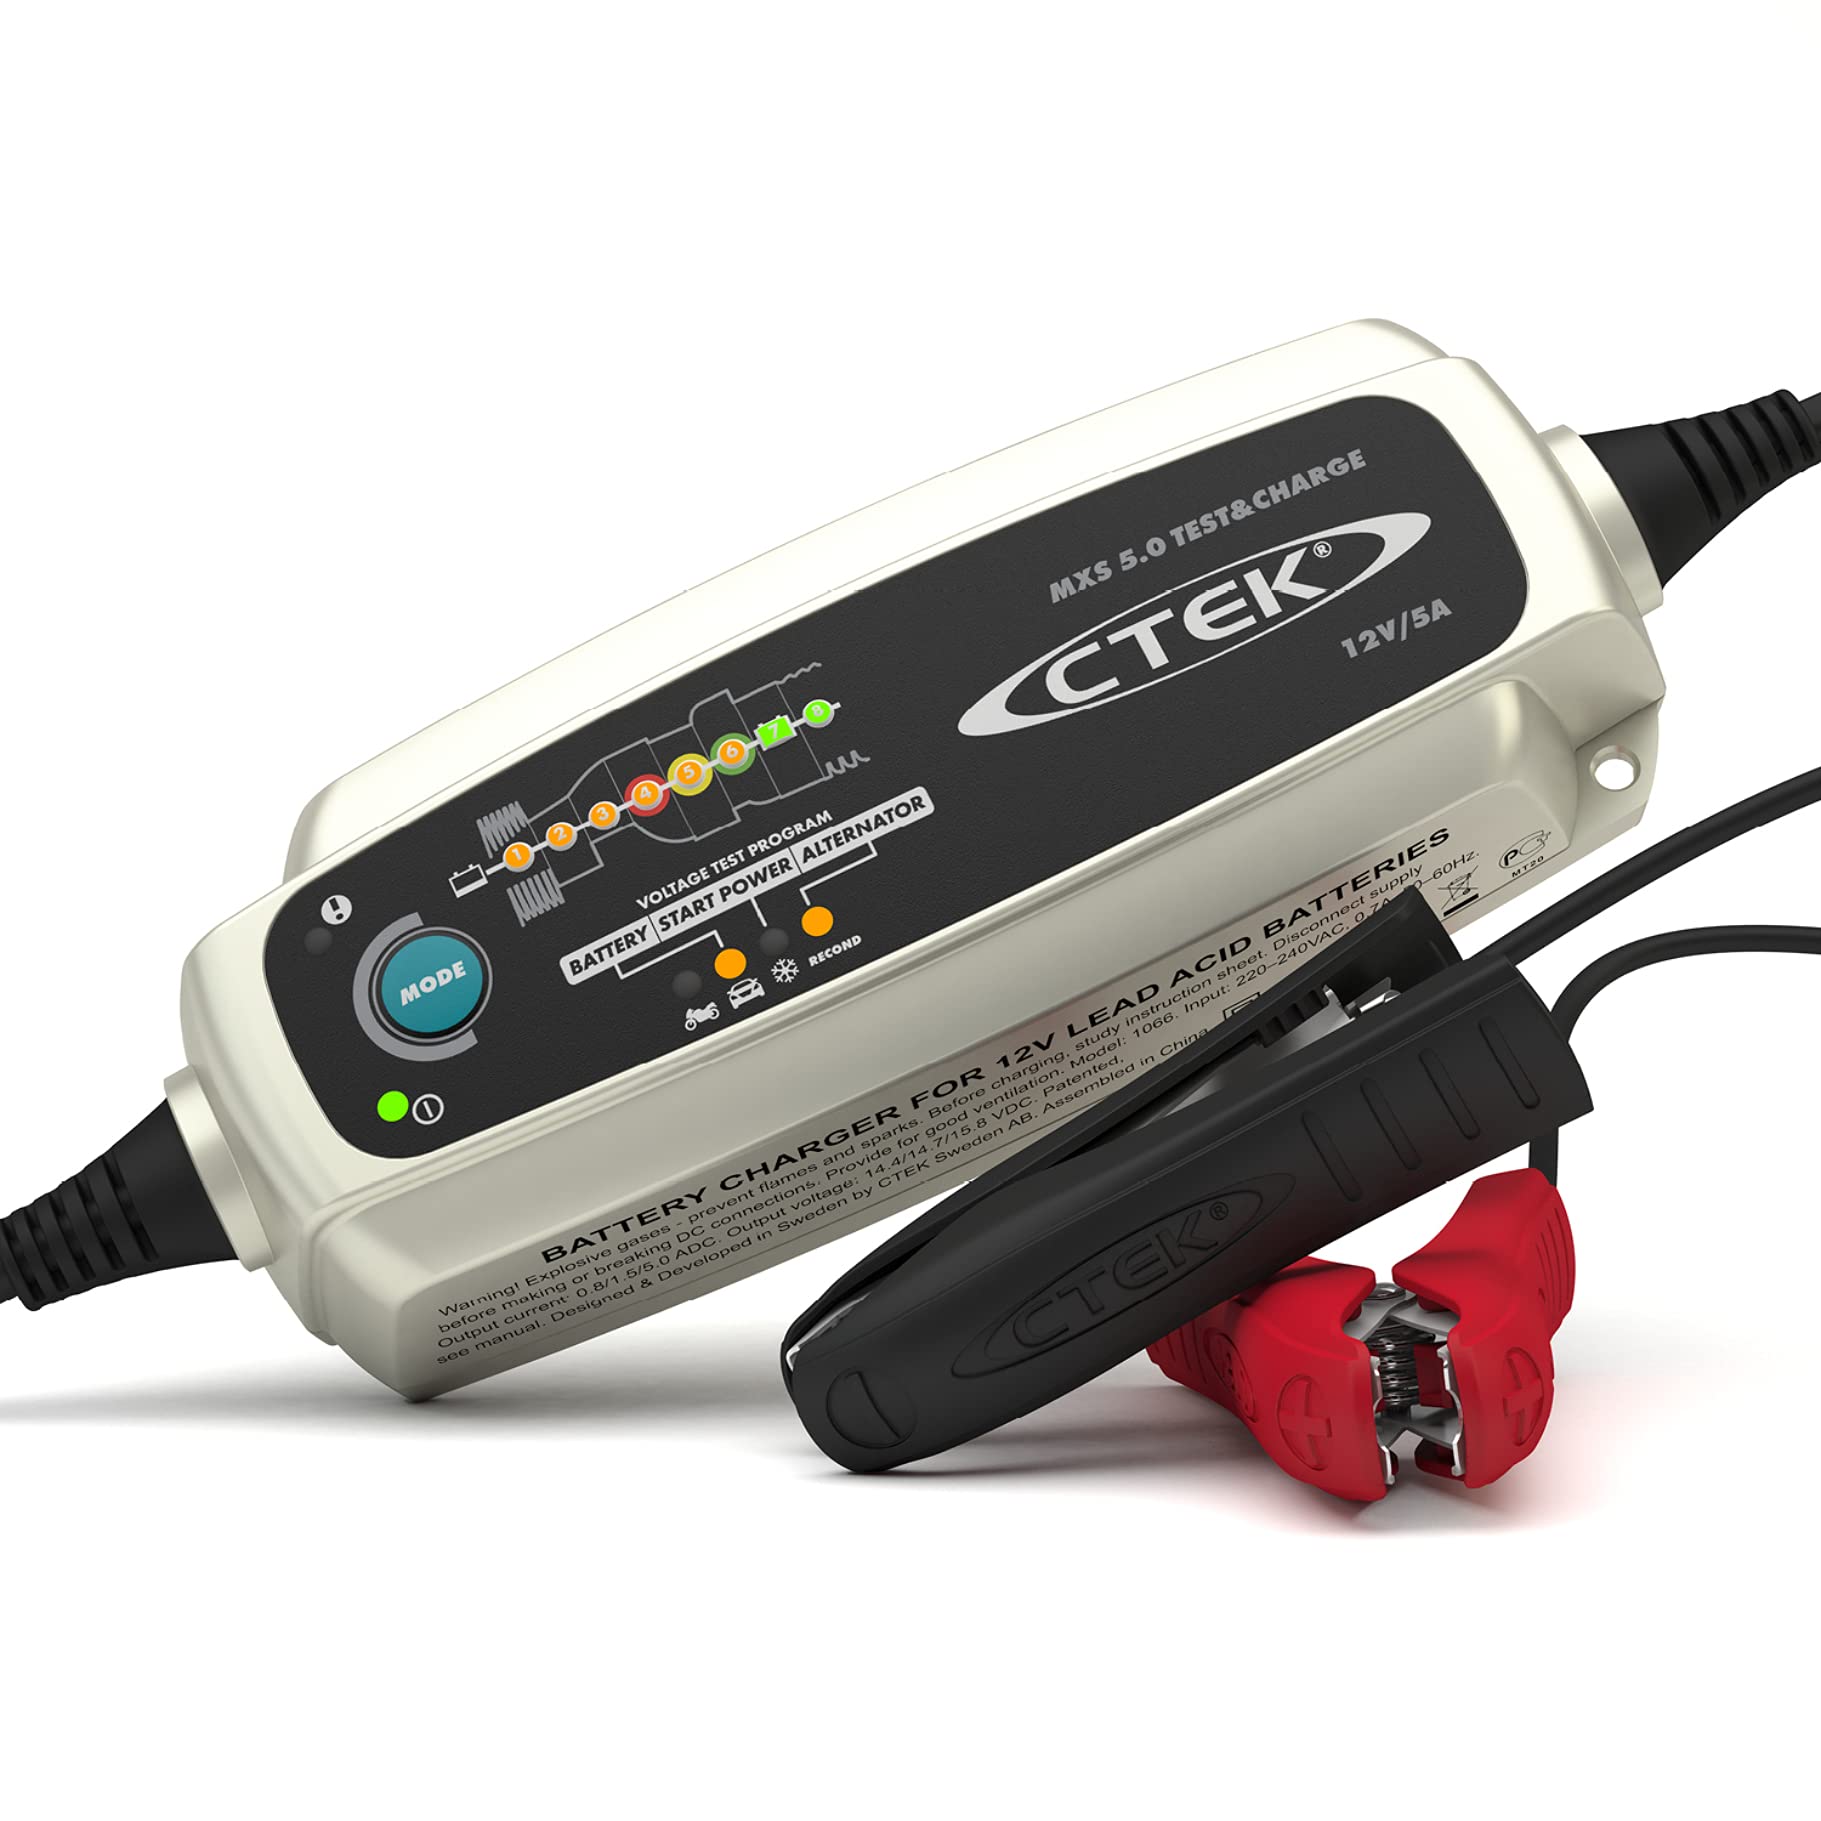 CTEK MXS 5.0 Test & Charge, Batterieladegerät 12V, Batteriepfleger, Ladegerät Auto Und LKW Ladegerät, Testet Batterie Und Lichtmaschine, Entsulfatierungsprogramm Und Rekonditionierungsmodus